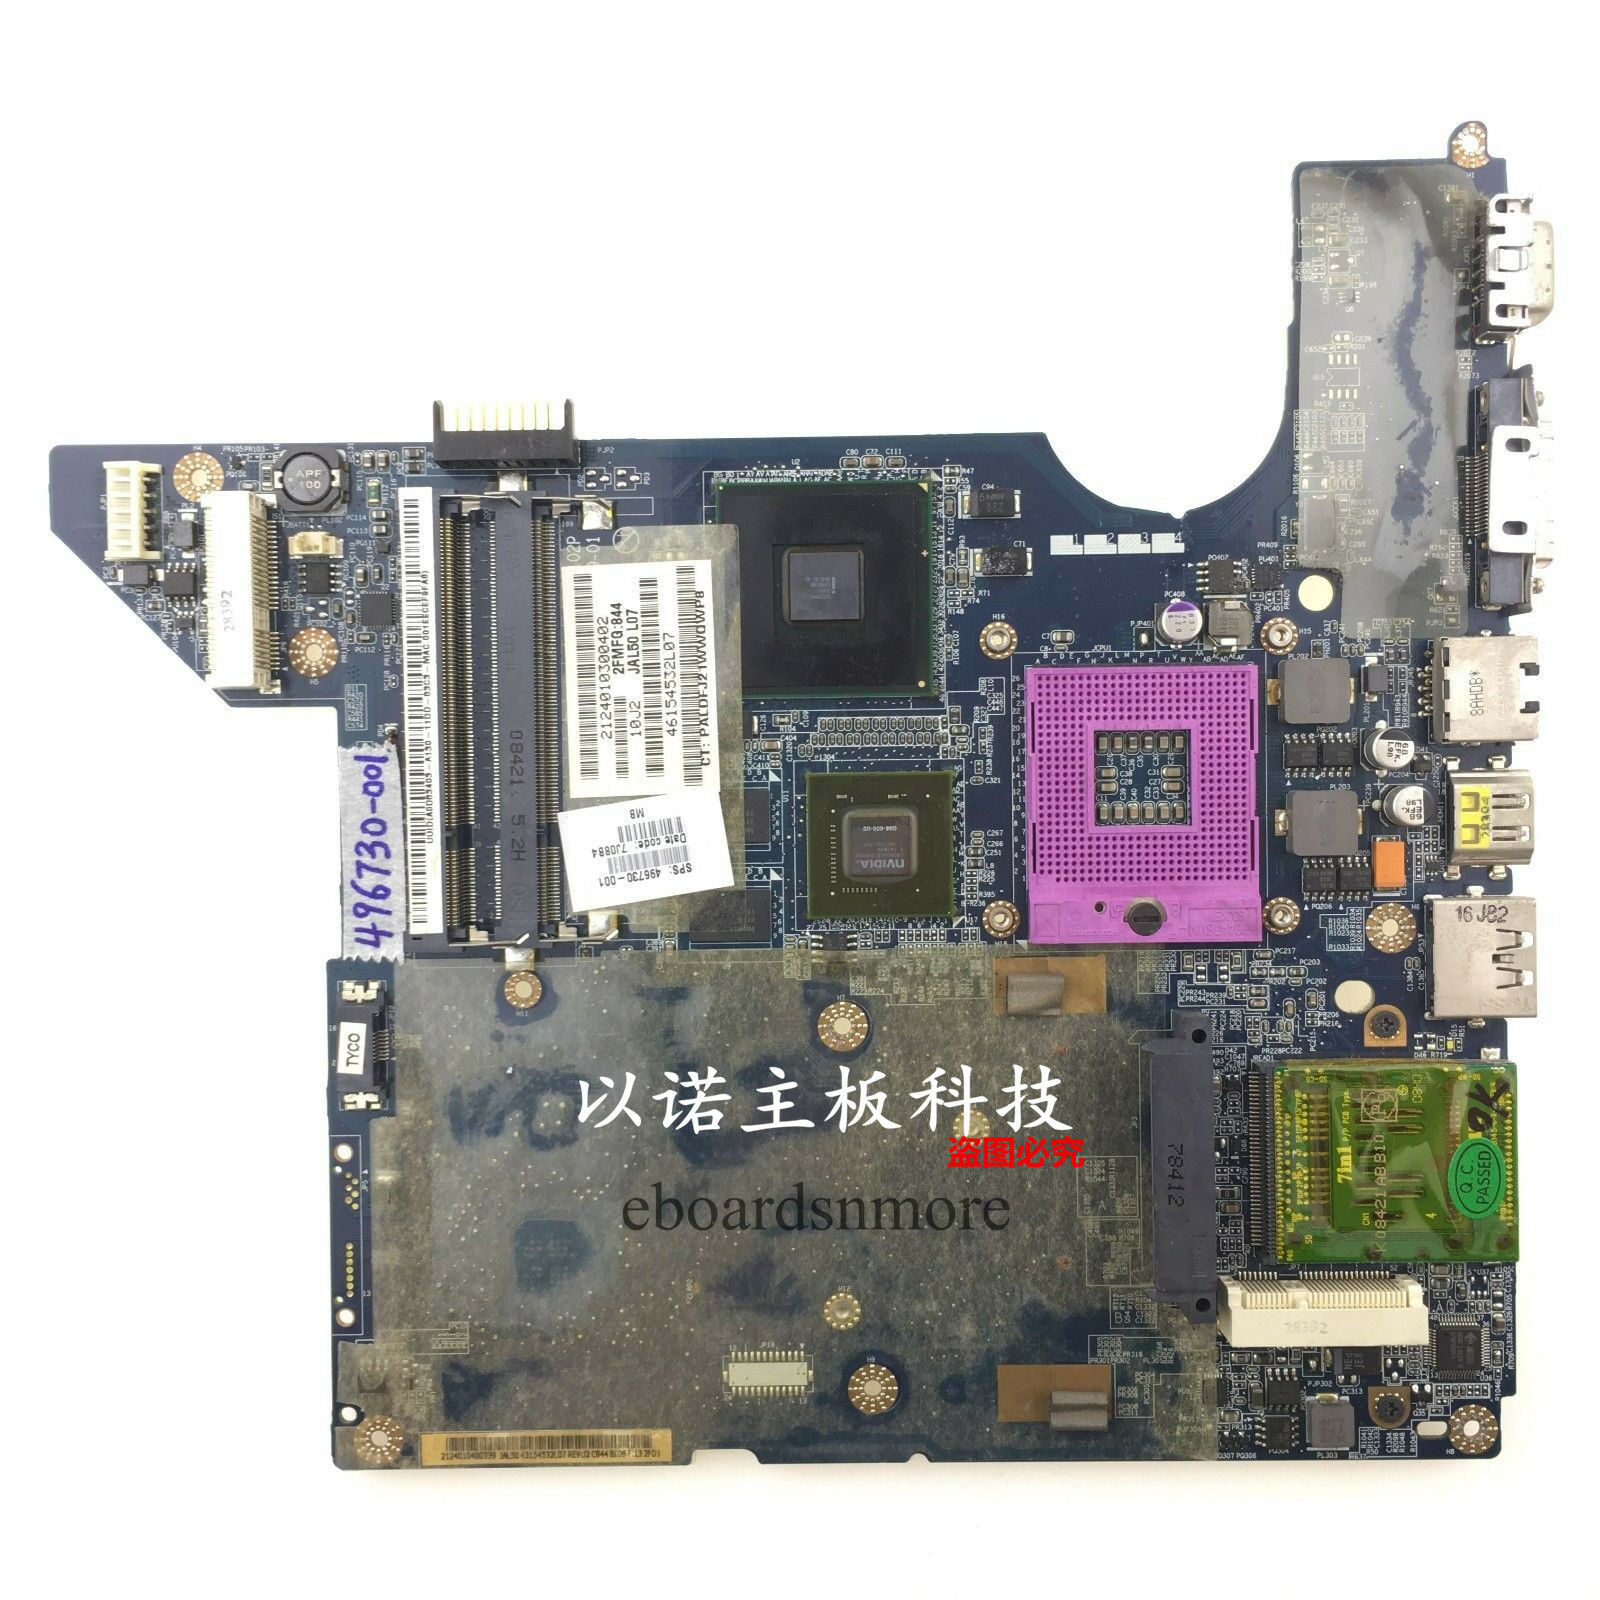 496730-001 for HP dv4 intel motherboard PM45 nvidia G98-600-U2,LA-4102P,Grade A Compatible CPU Brand: Intel - Click Image to Close